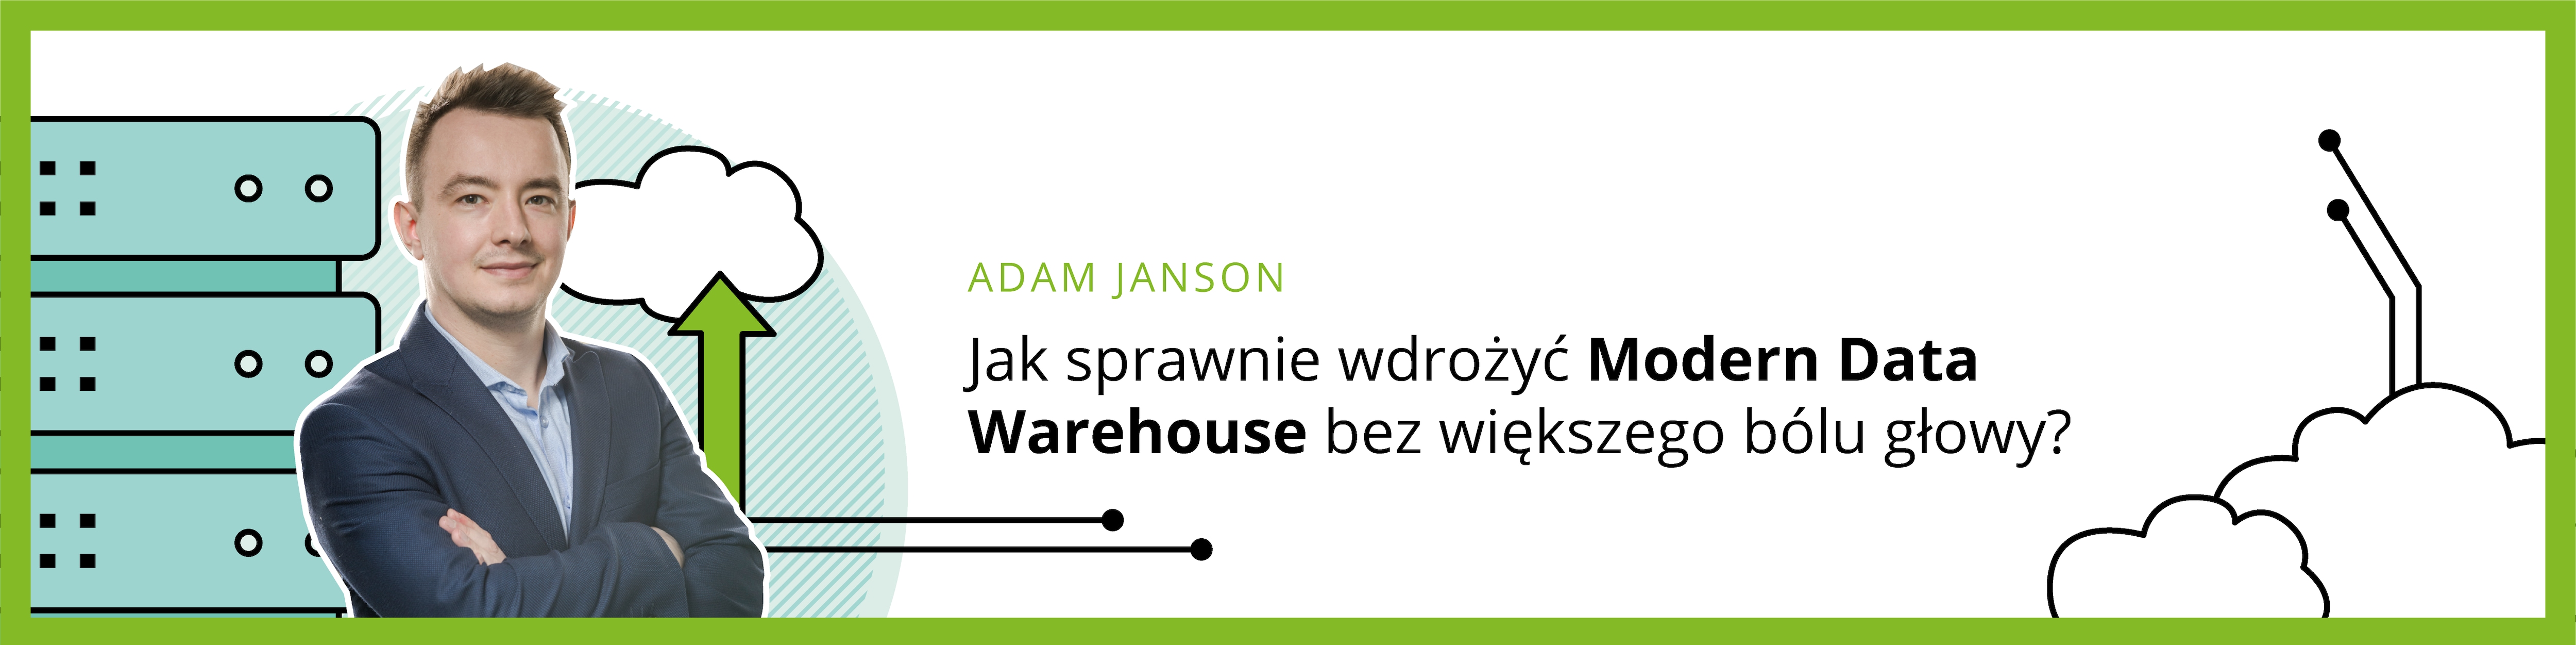 pl-jak-sprawnie-wdrozyc-Modern-Data-Warehouse-4x1-baner.png (5335×1335)